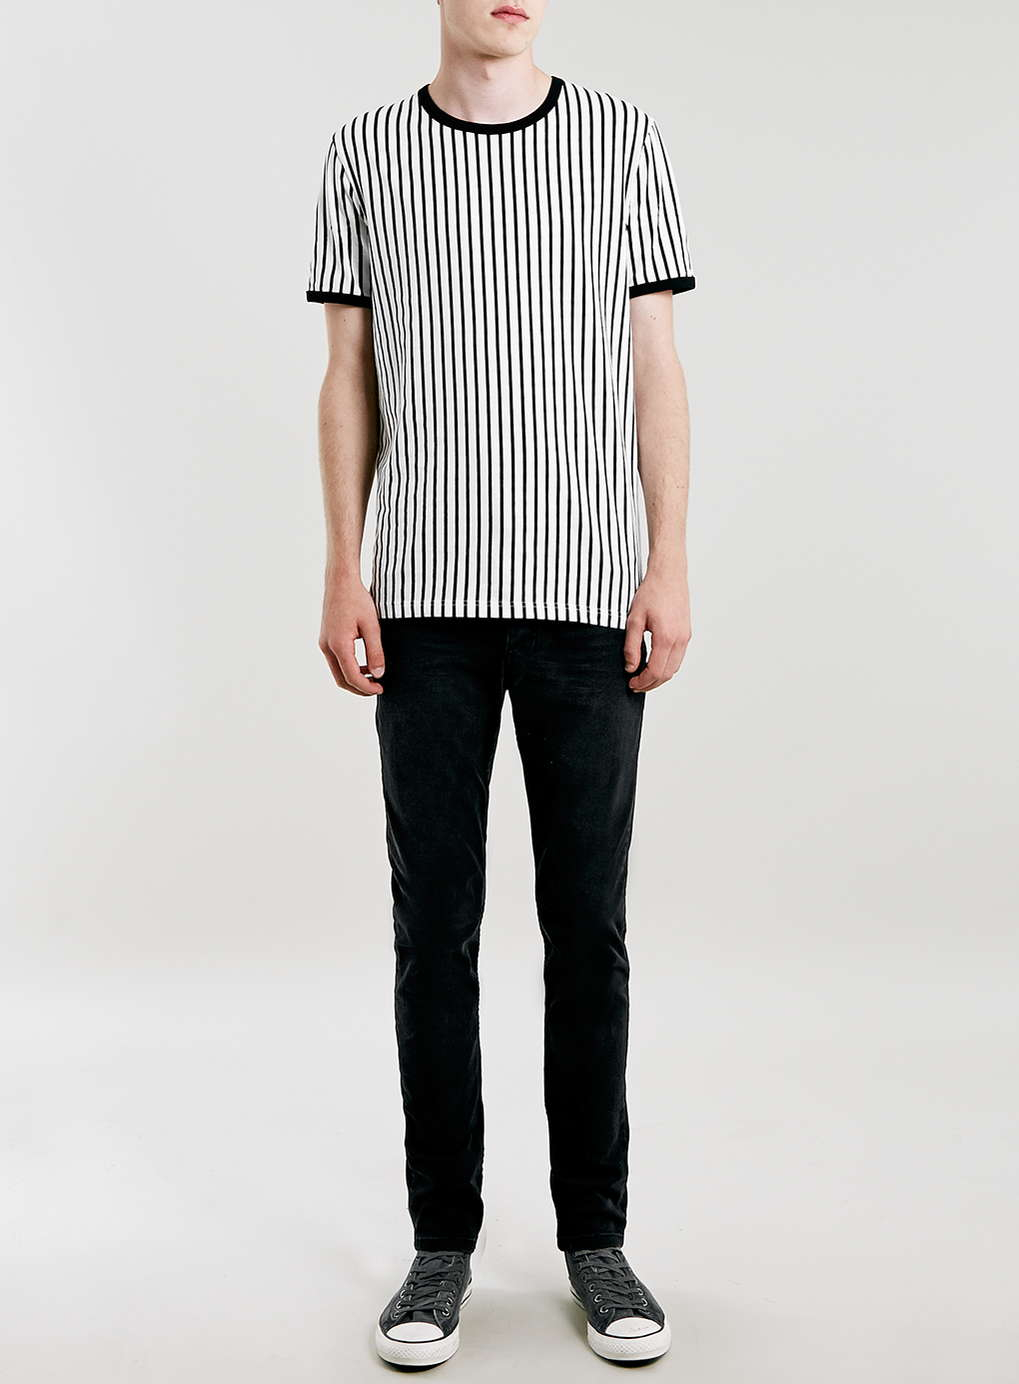 TOPMAN Black Vertical Stripe T-shirt for Men - Lyst